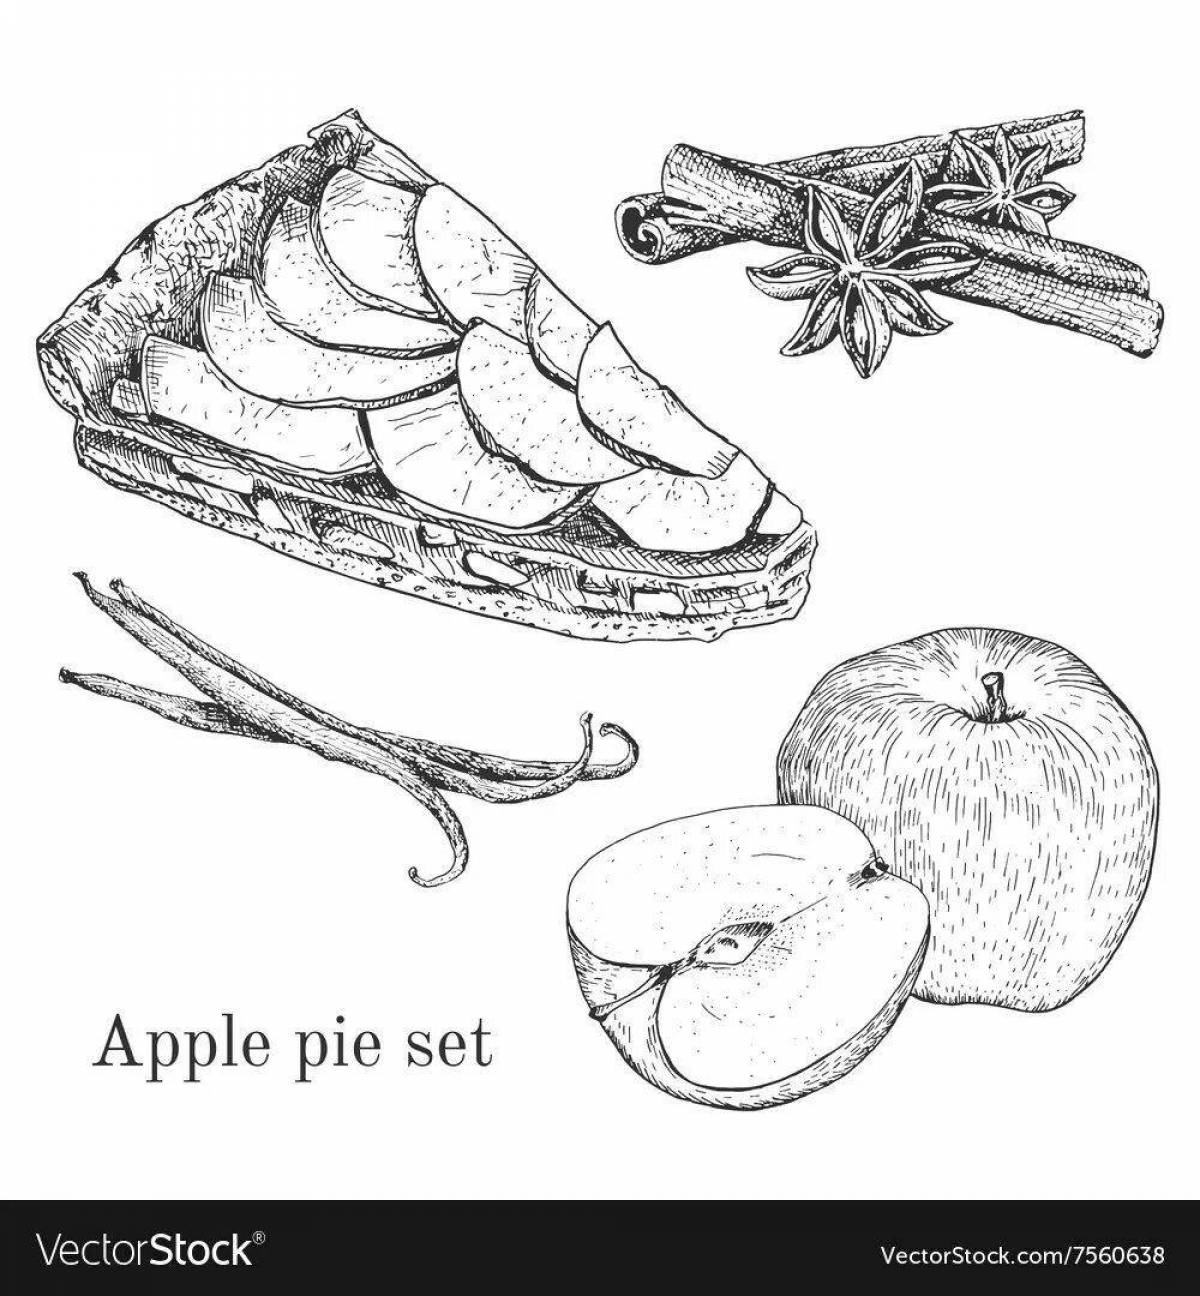 Juicy coloring apple pie